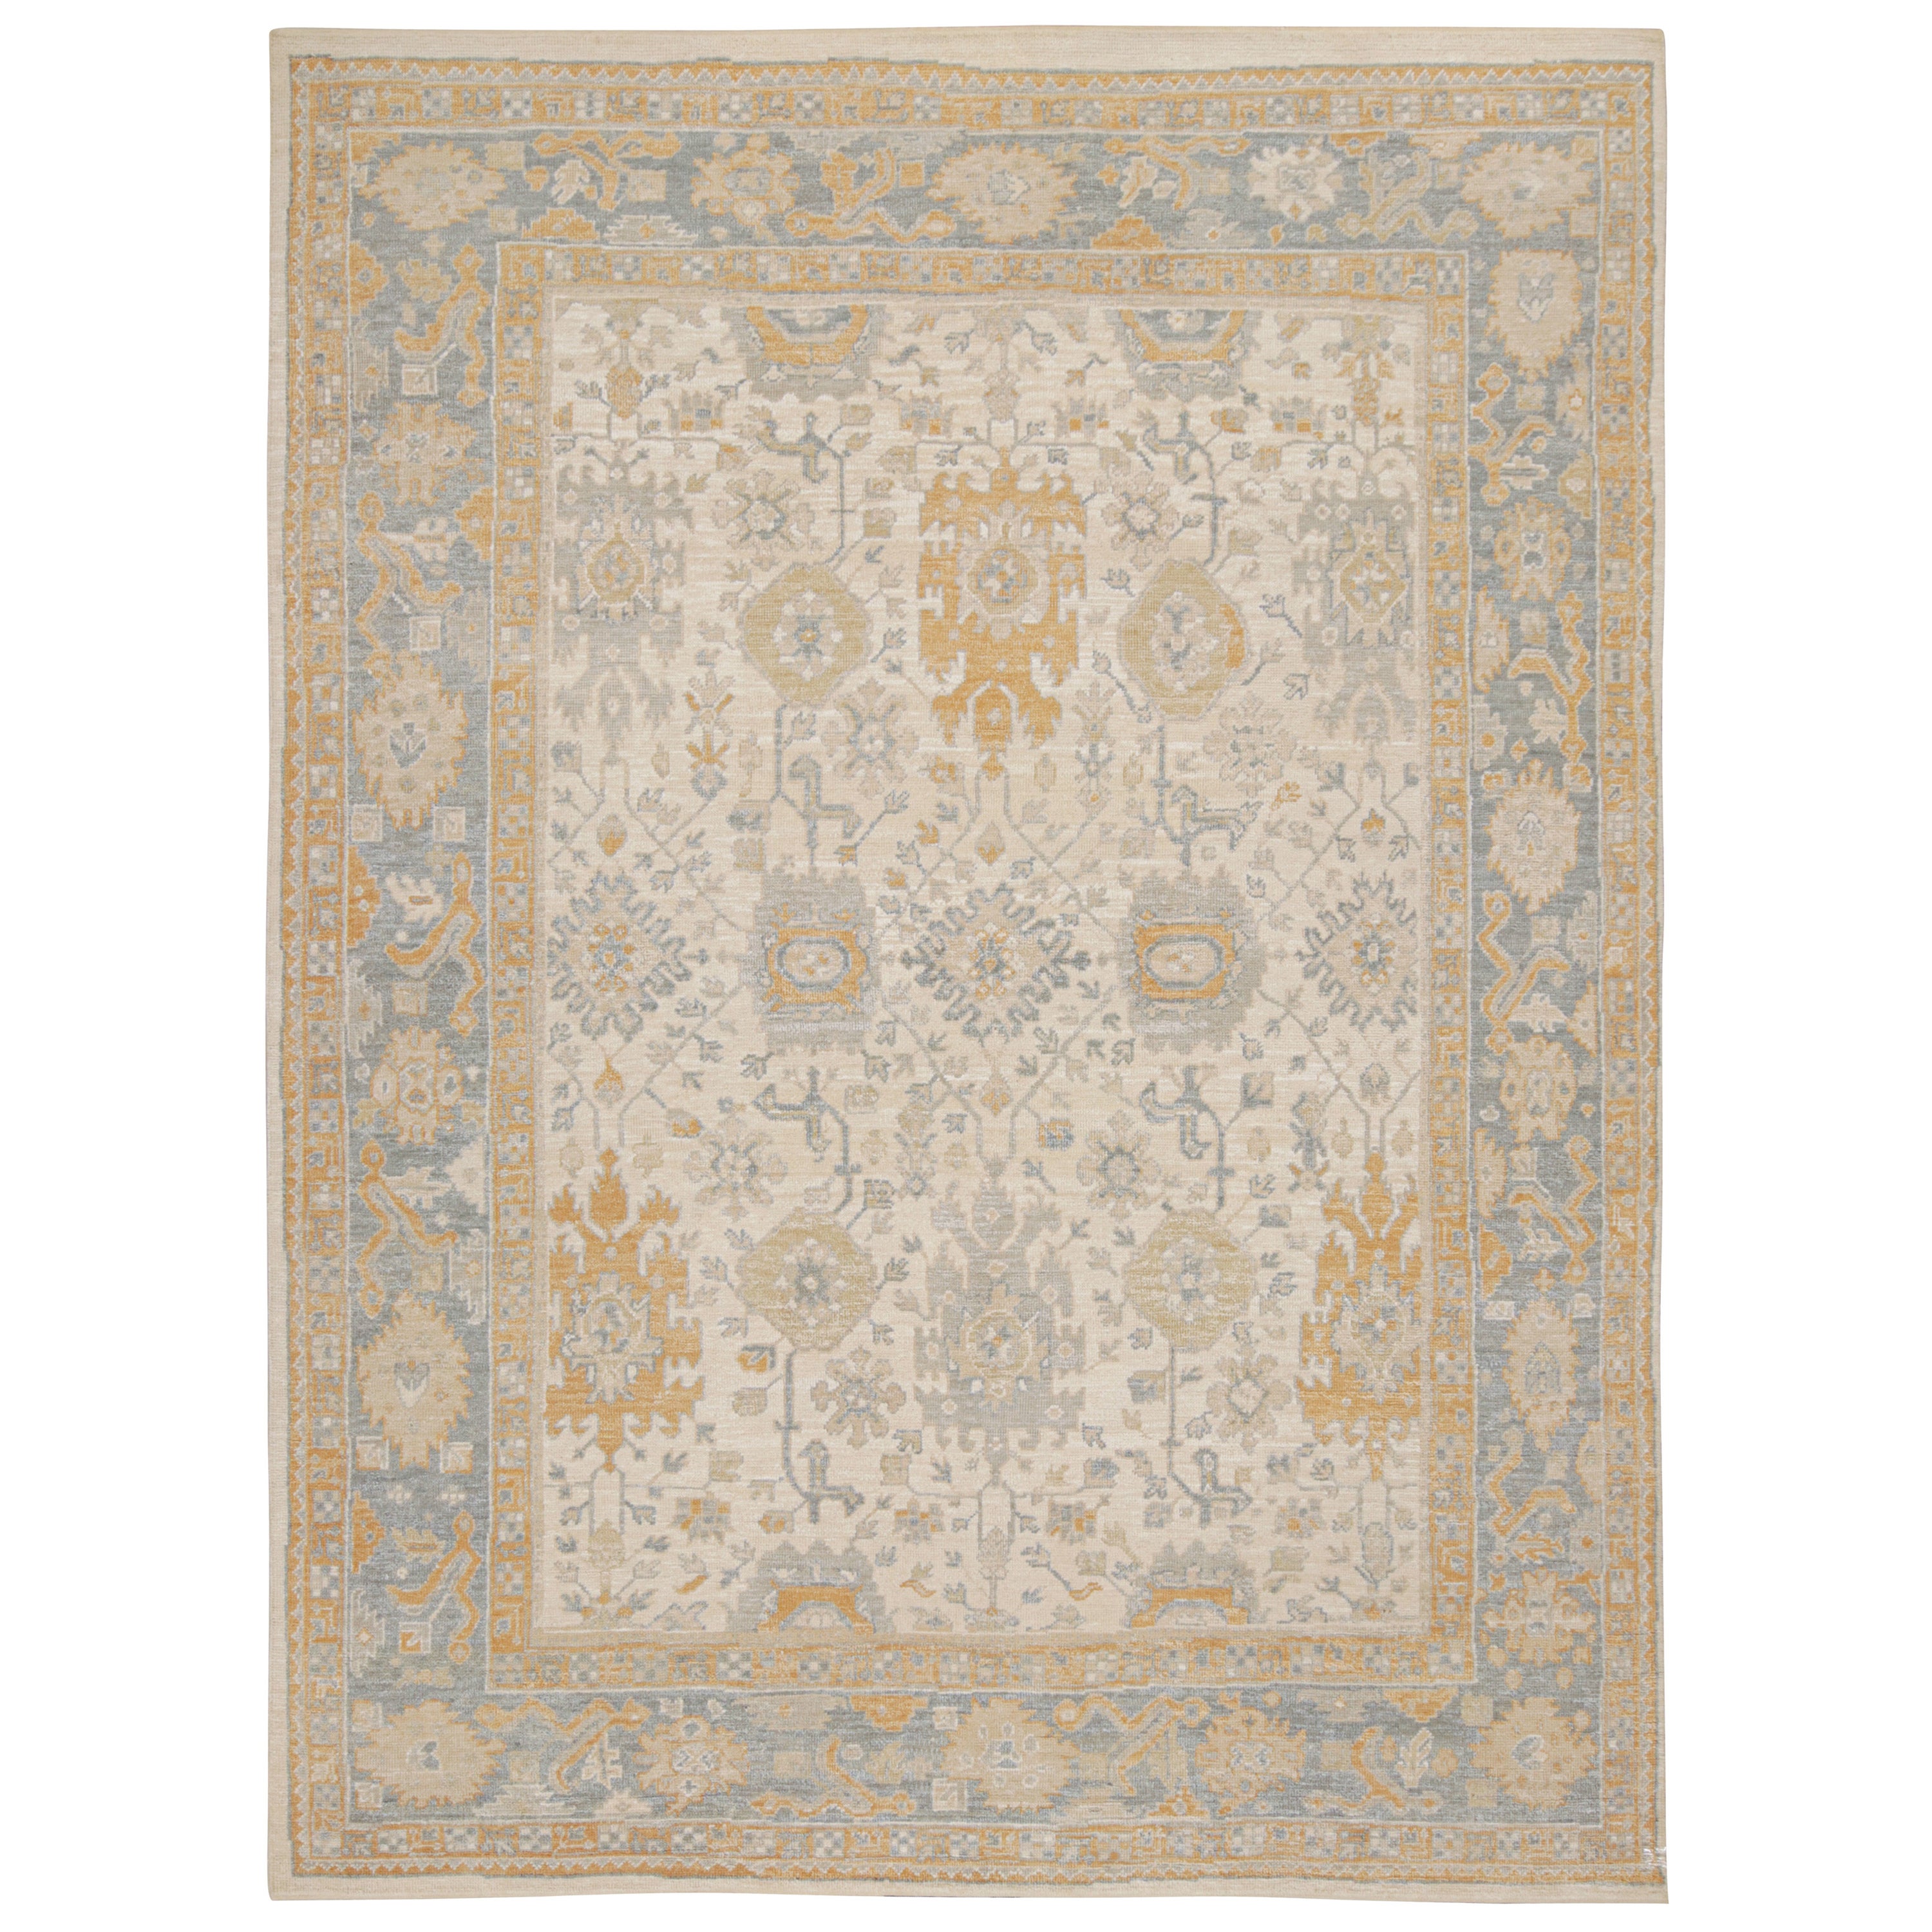 Tapis Oushak de Rug & Kilim à motifs floraux beige, or et bleu